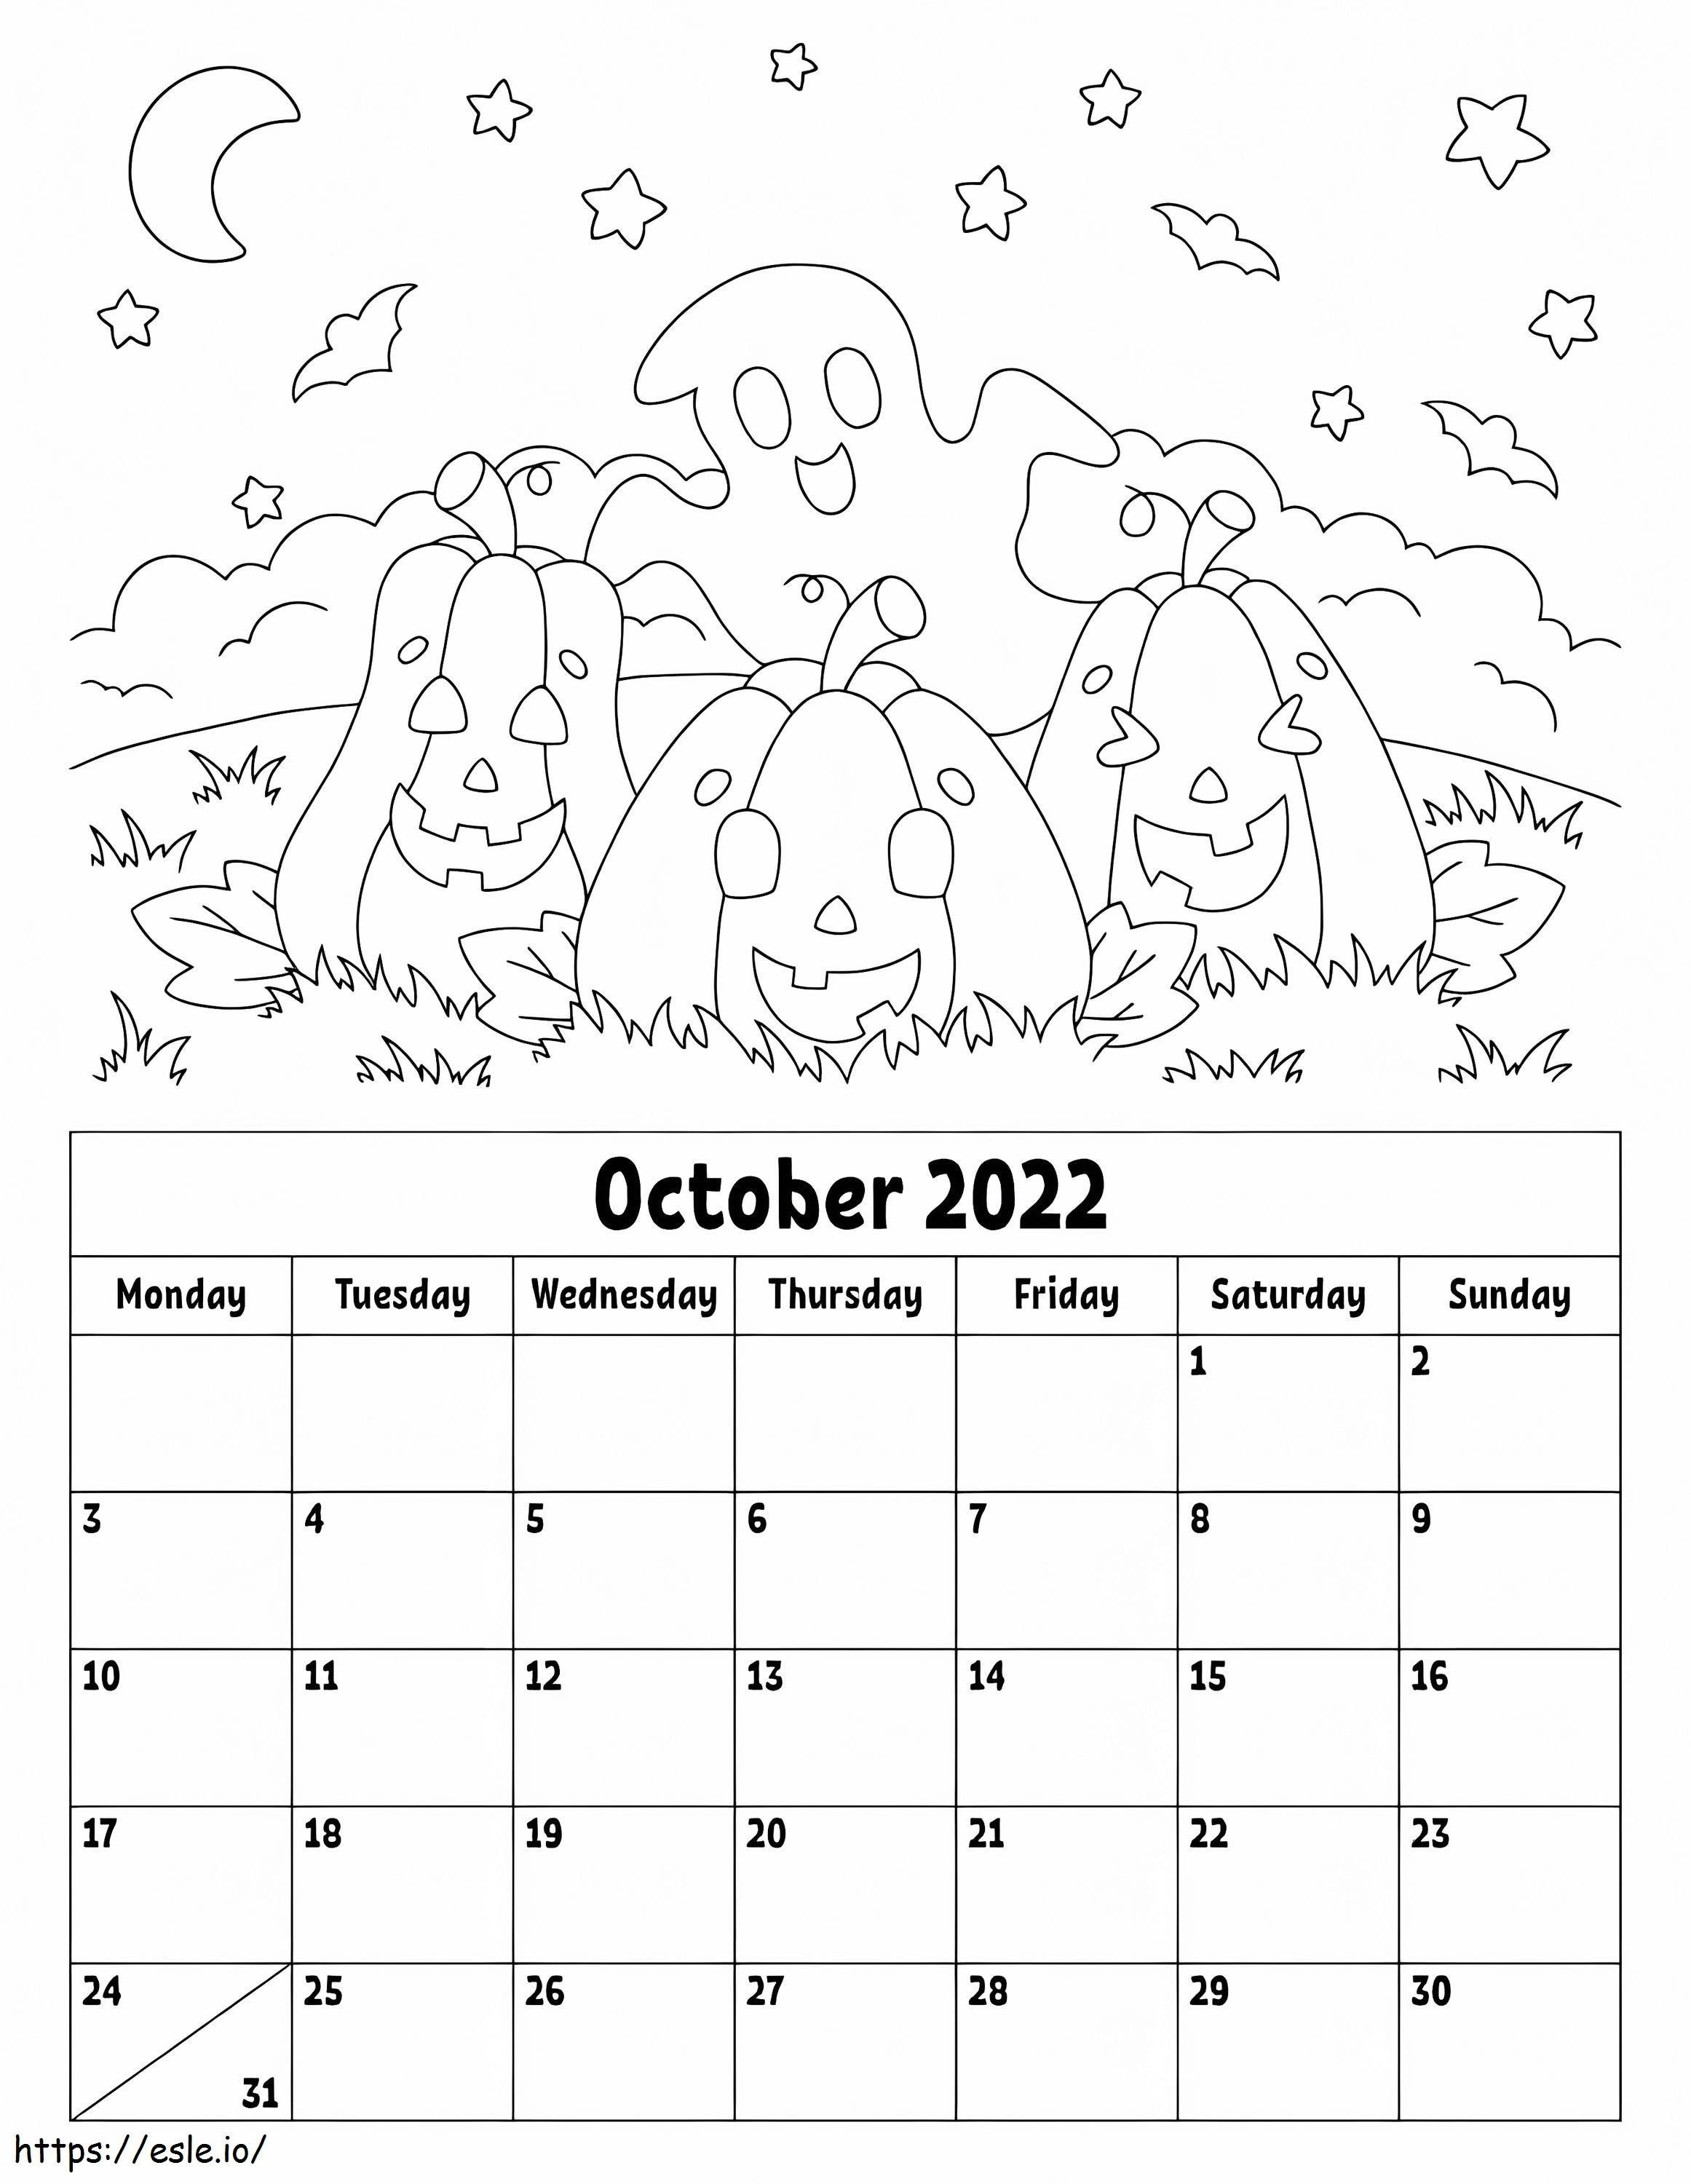 Ekim 2022 Takvimi boyama